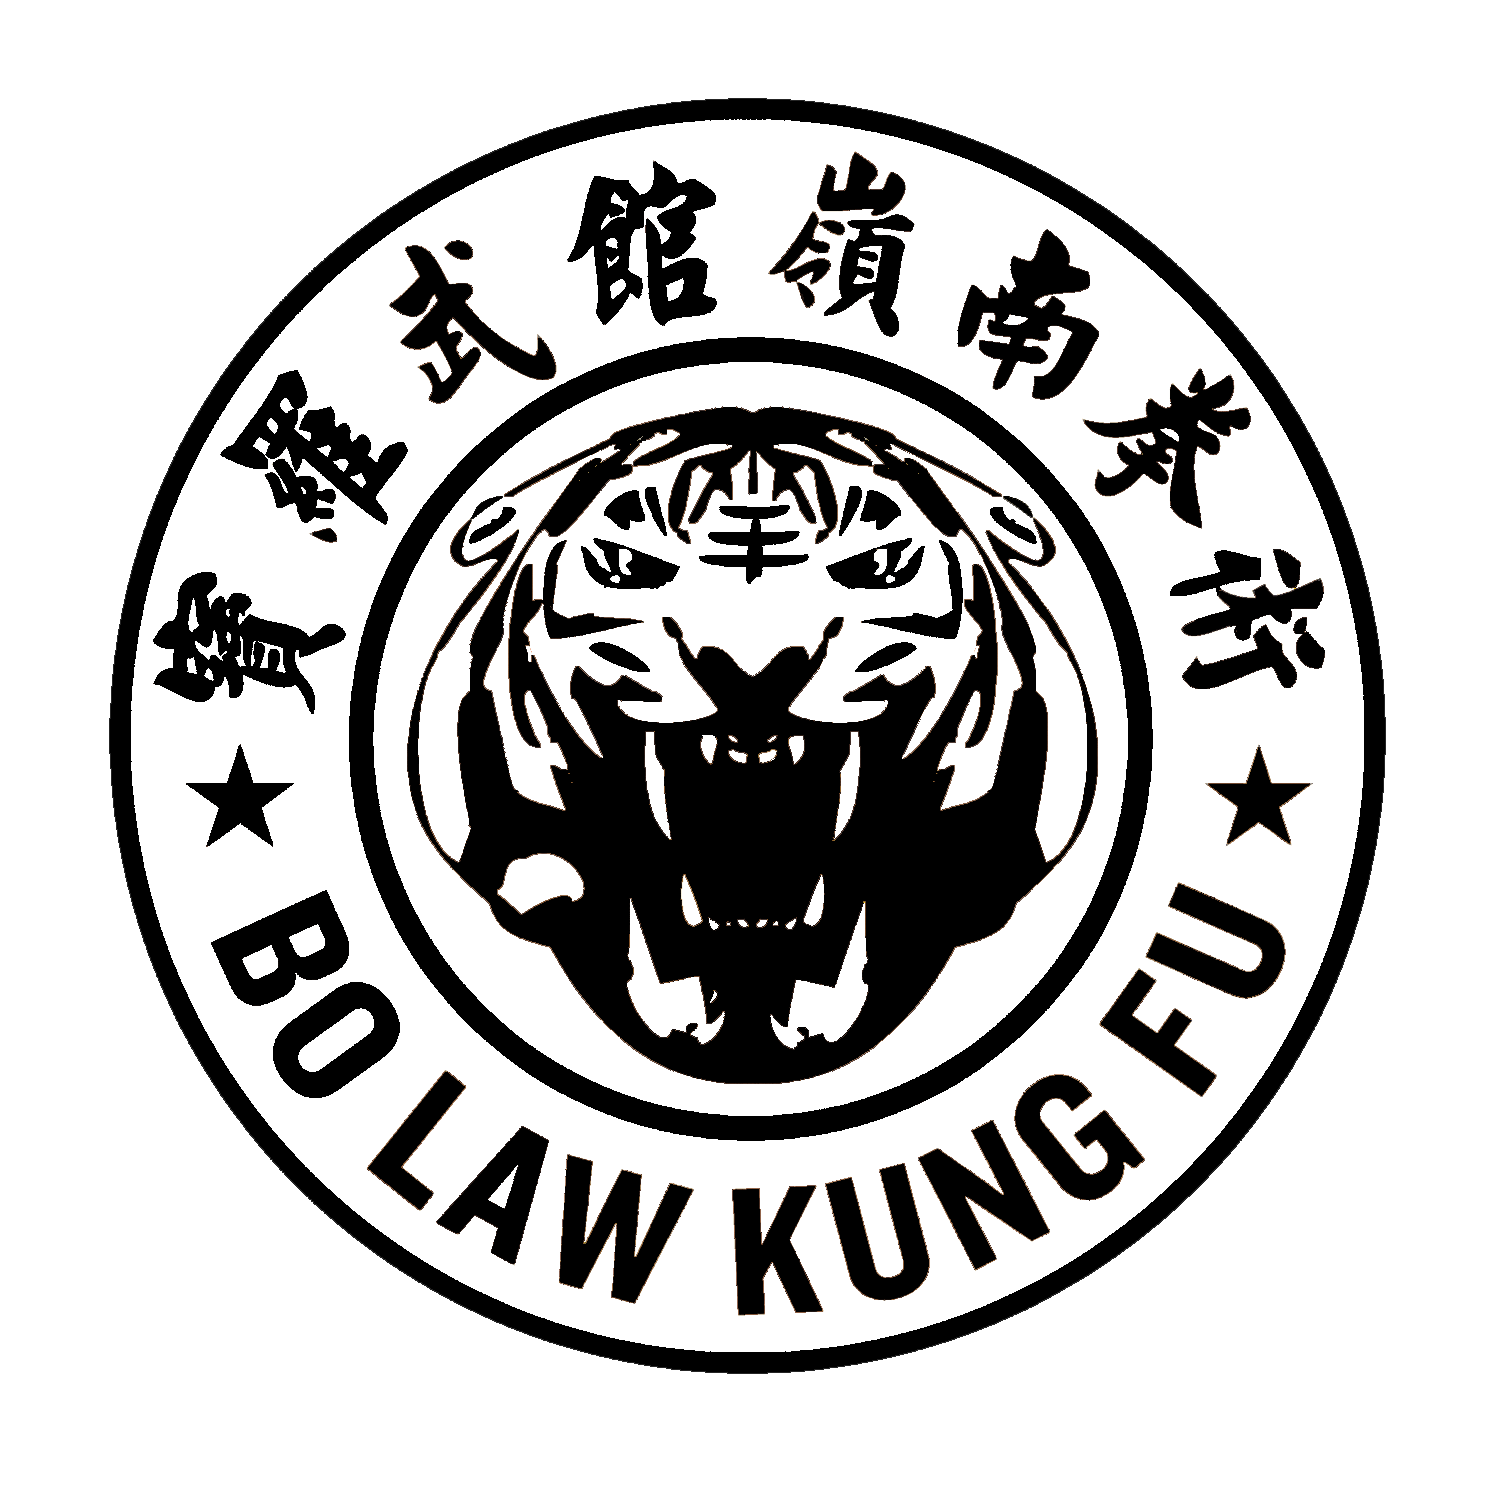 Bo Law Kung Fu